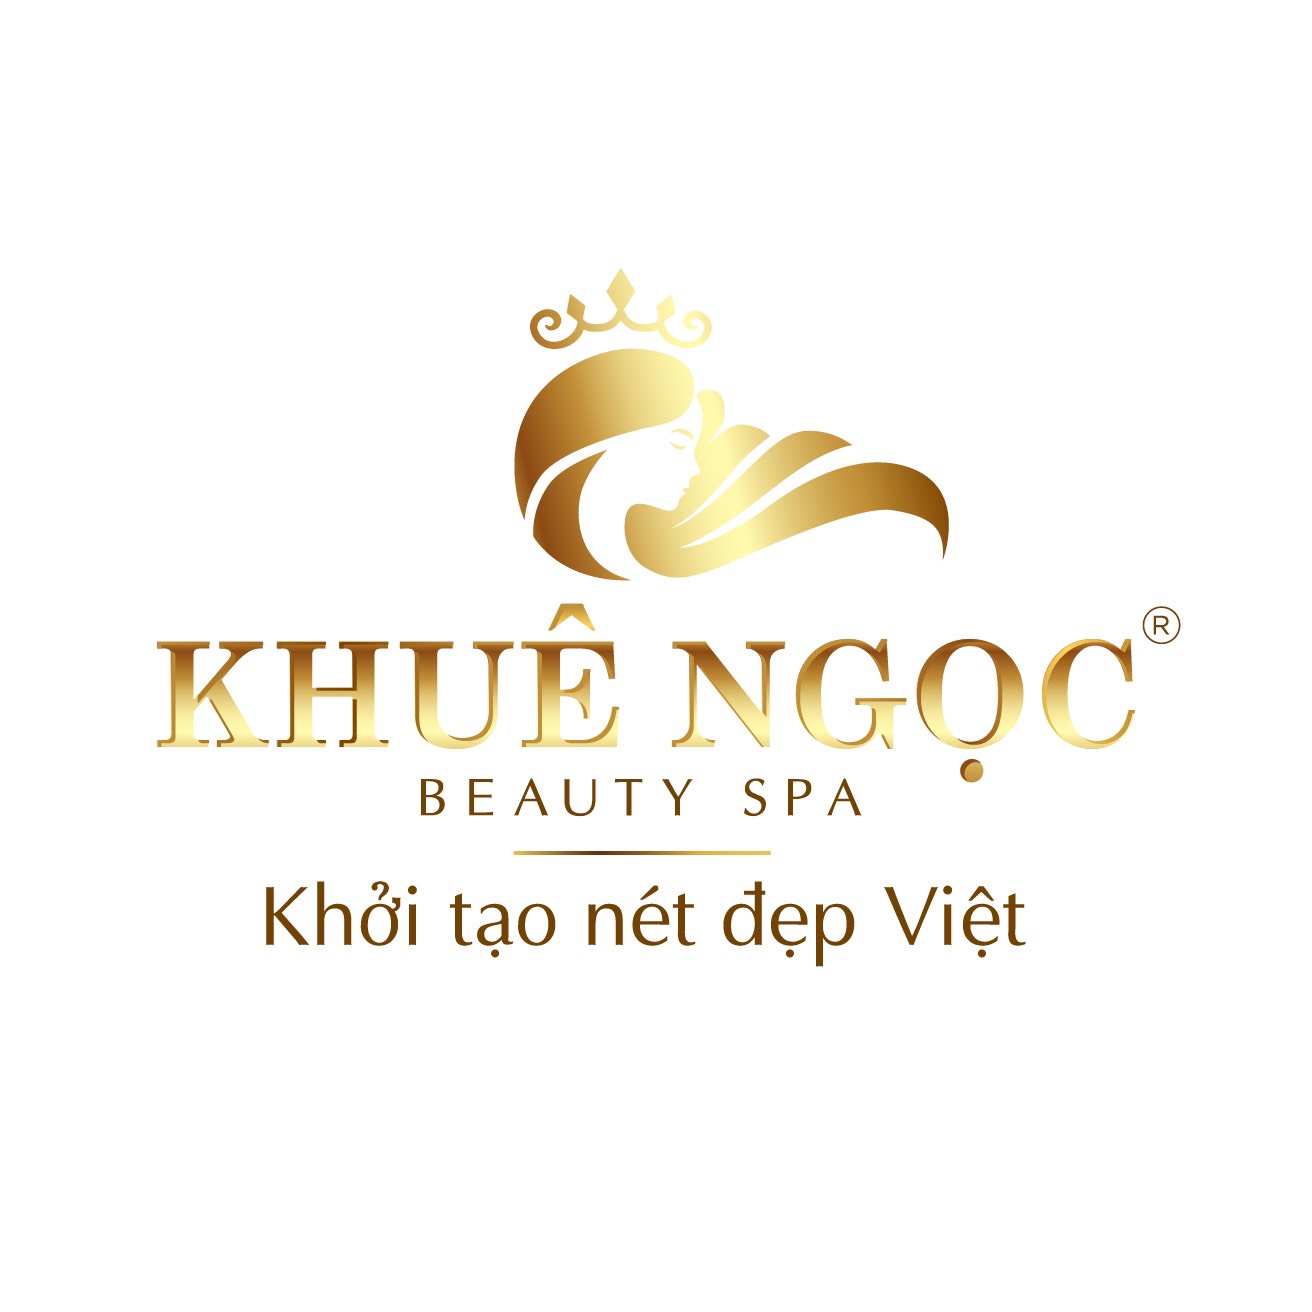 Ceo Hoàng Thảo Nguyên chính thức kinh doanh thương hiệu mới Khuê Ngọc Beauty Spa